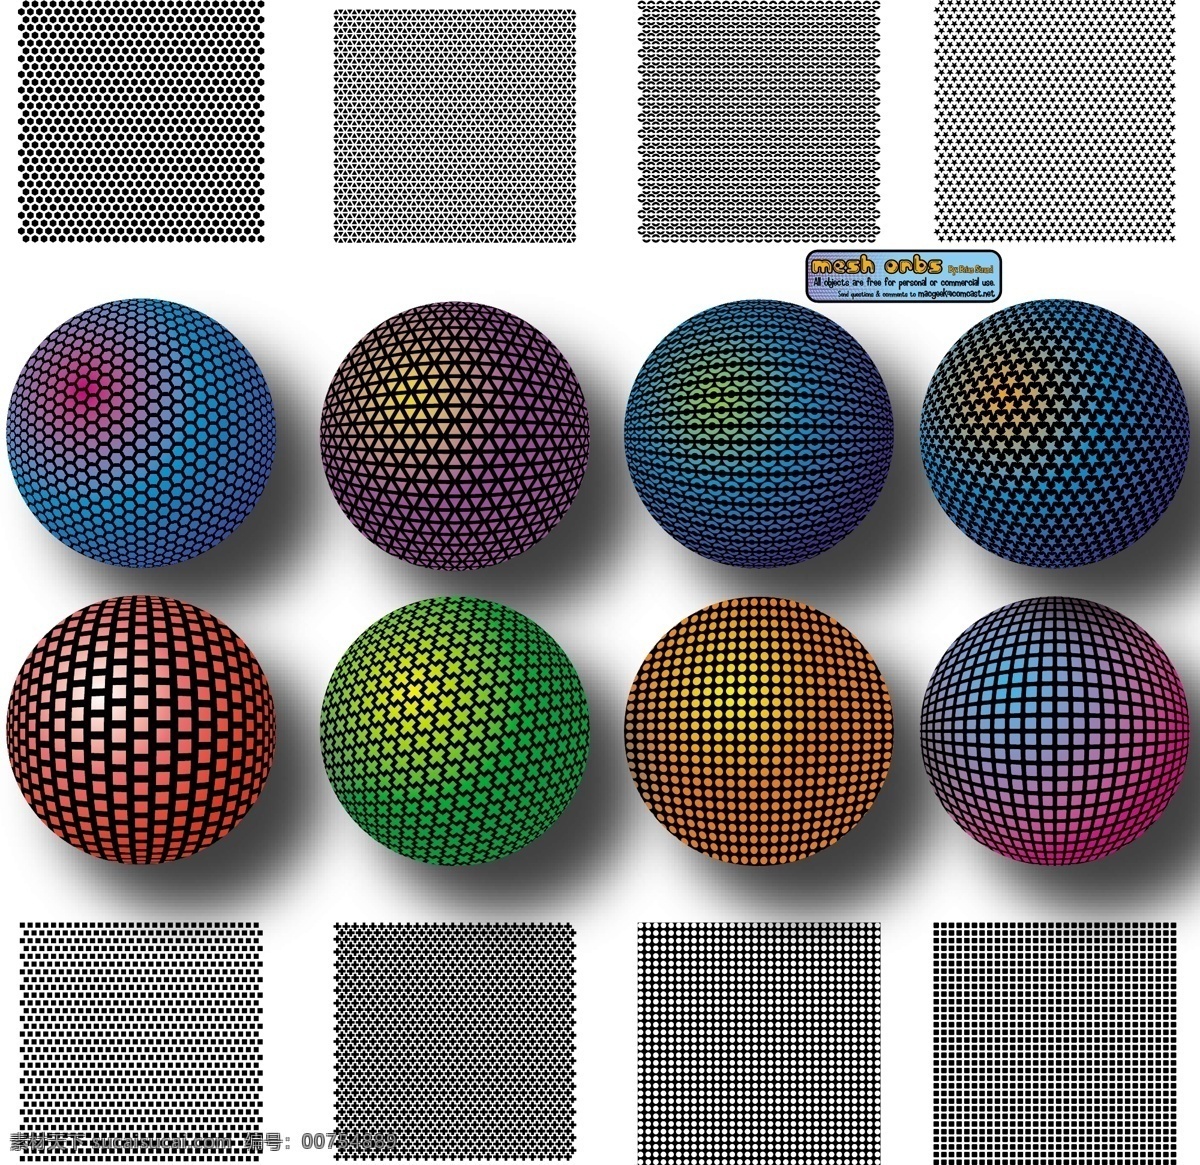 多彩 立体 球面 图案 ai矢量 立体球 矢量素材 圆点素材 球面图案 圆形球 矢量图 花纹花边